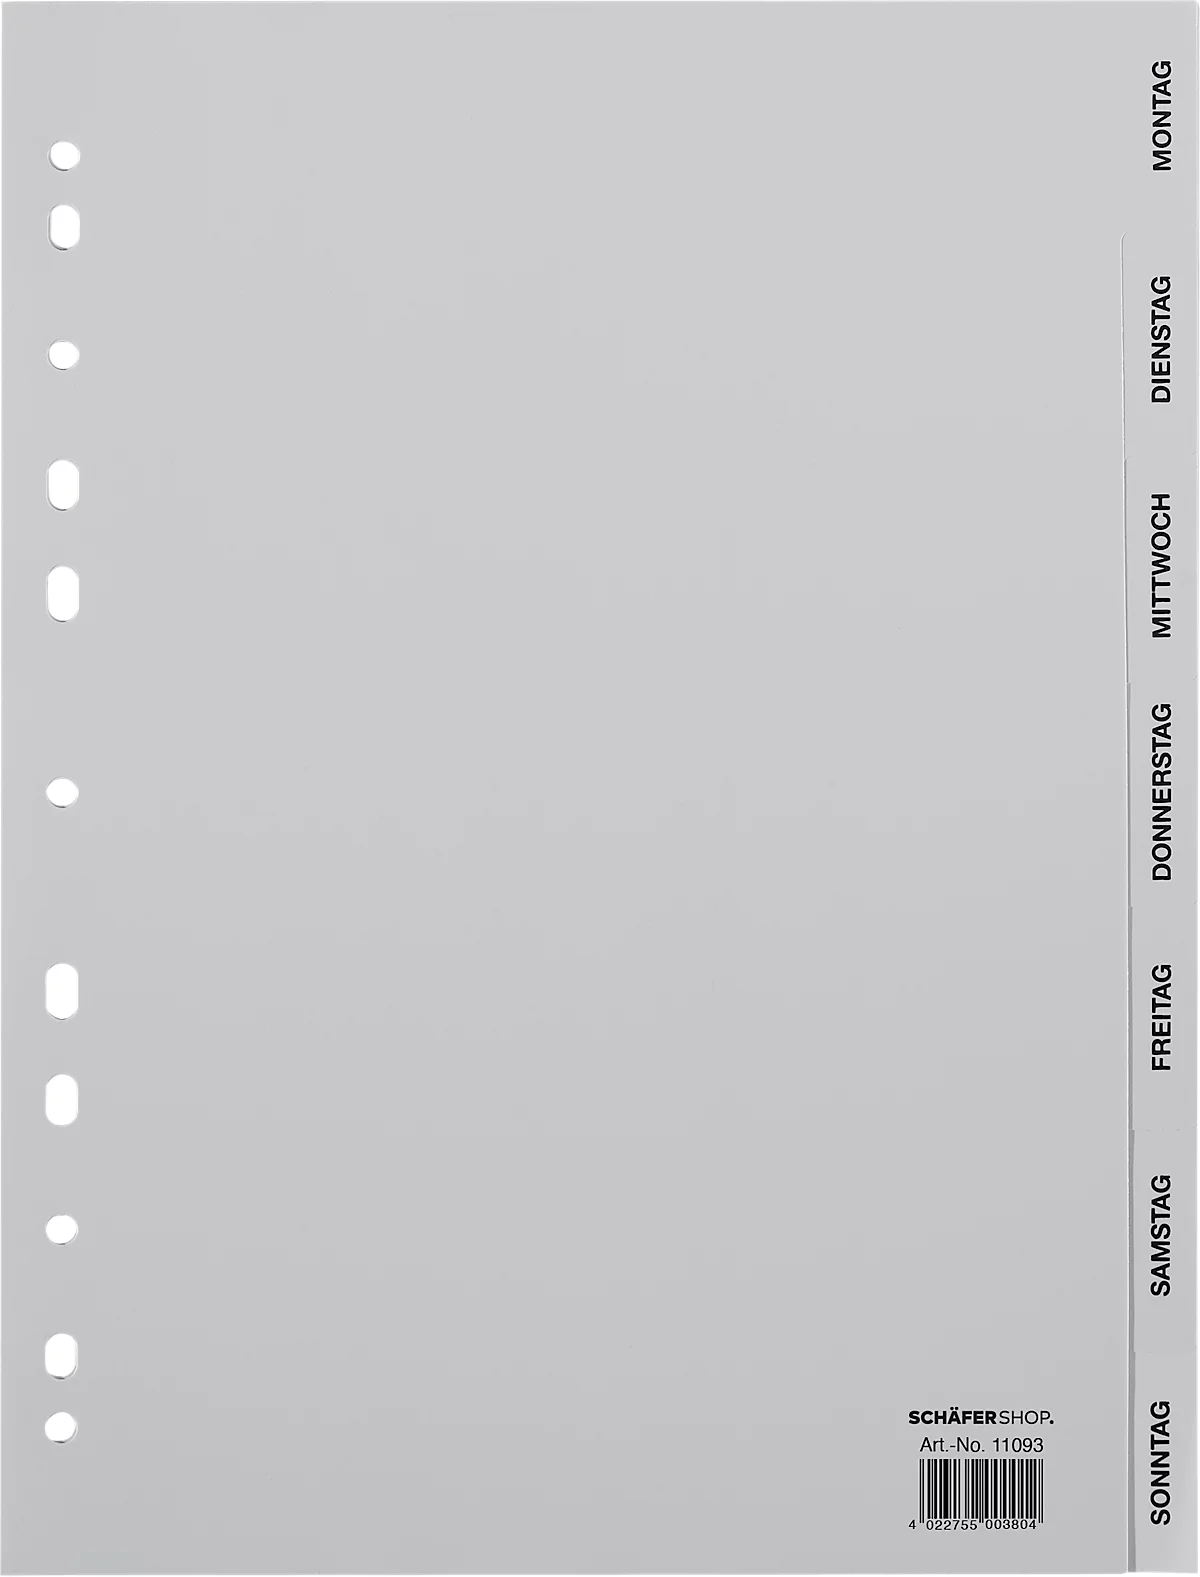 Schäfer Shop Select PP pestañas de encuadernación, DIN A4 formato completo, días lunes-sol (7 hojas), gris